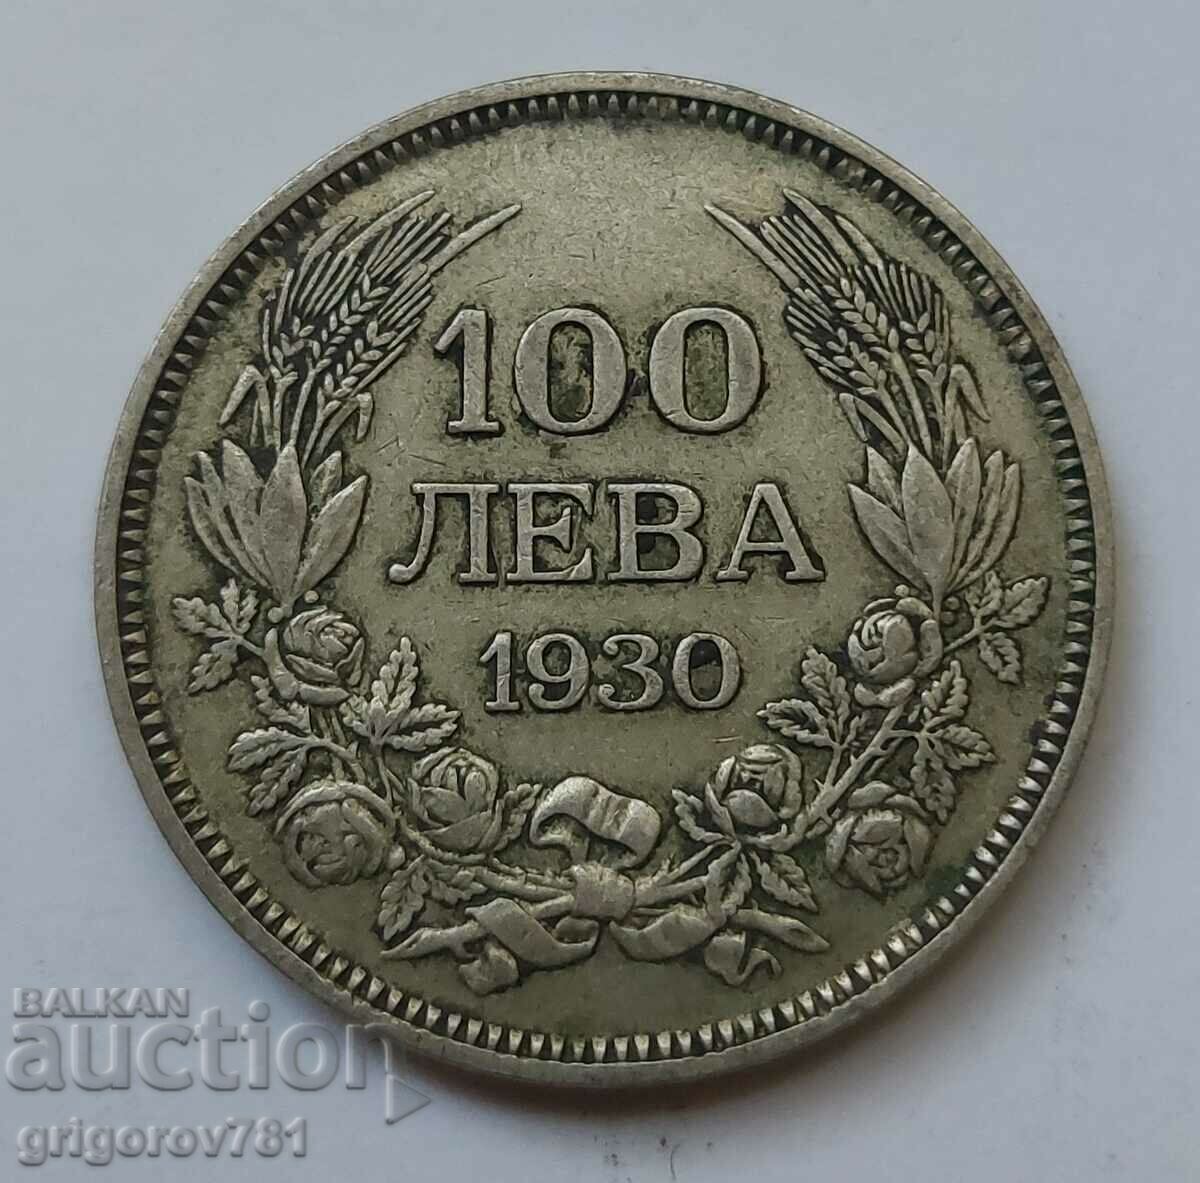 100 leva argint Bulgaria 1930 - monedă de argint #19